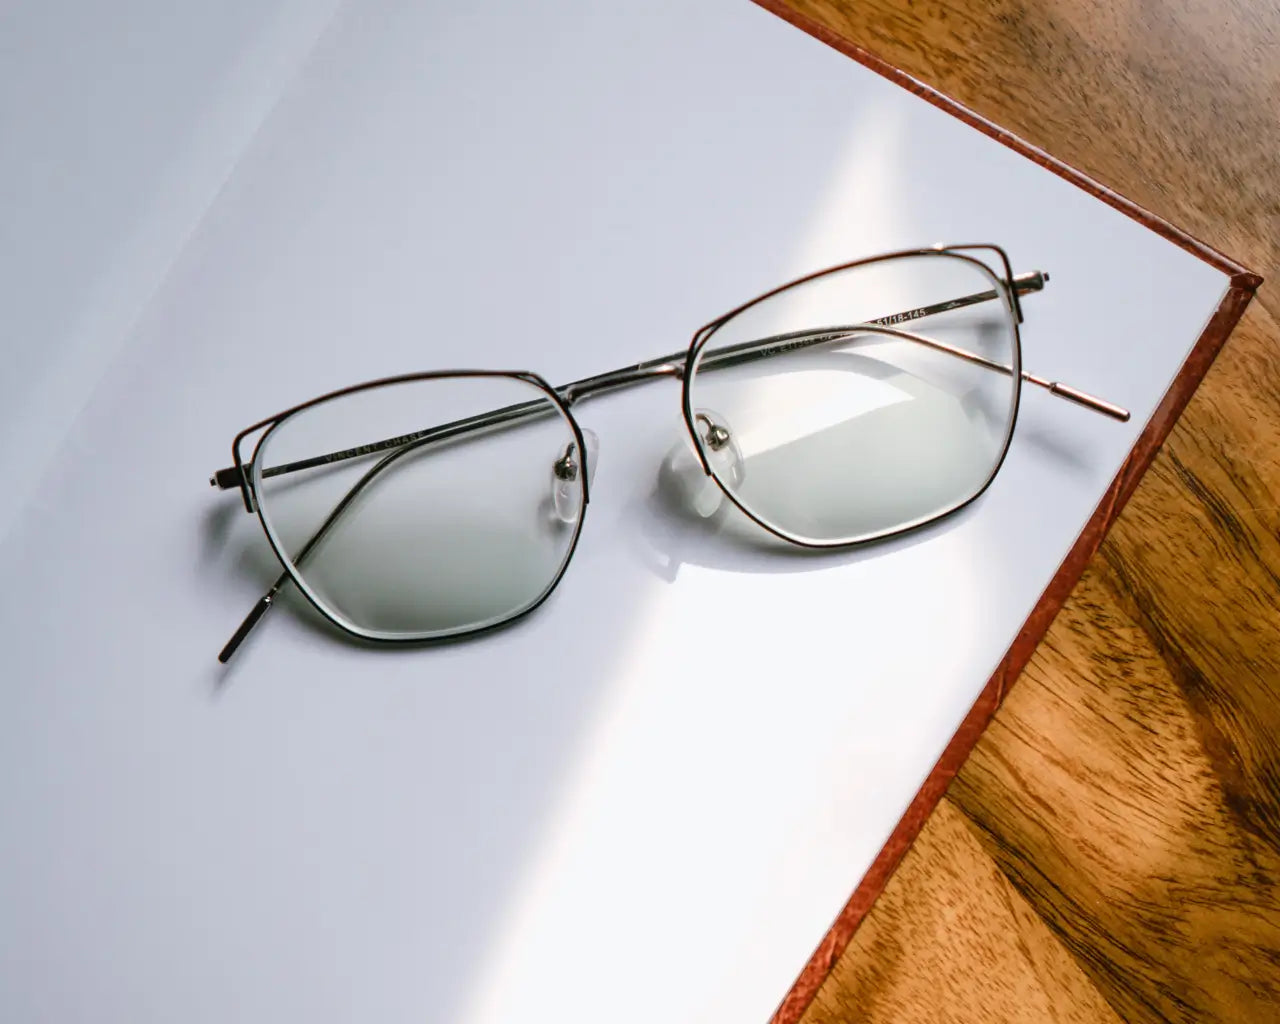 Trendy metal eyeglasses sitting on open journal